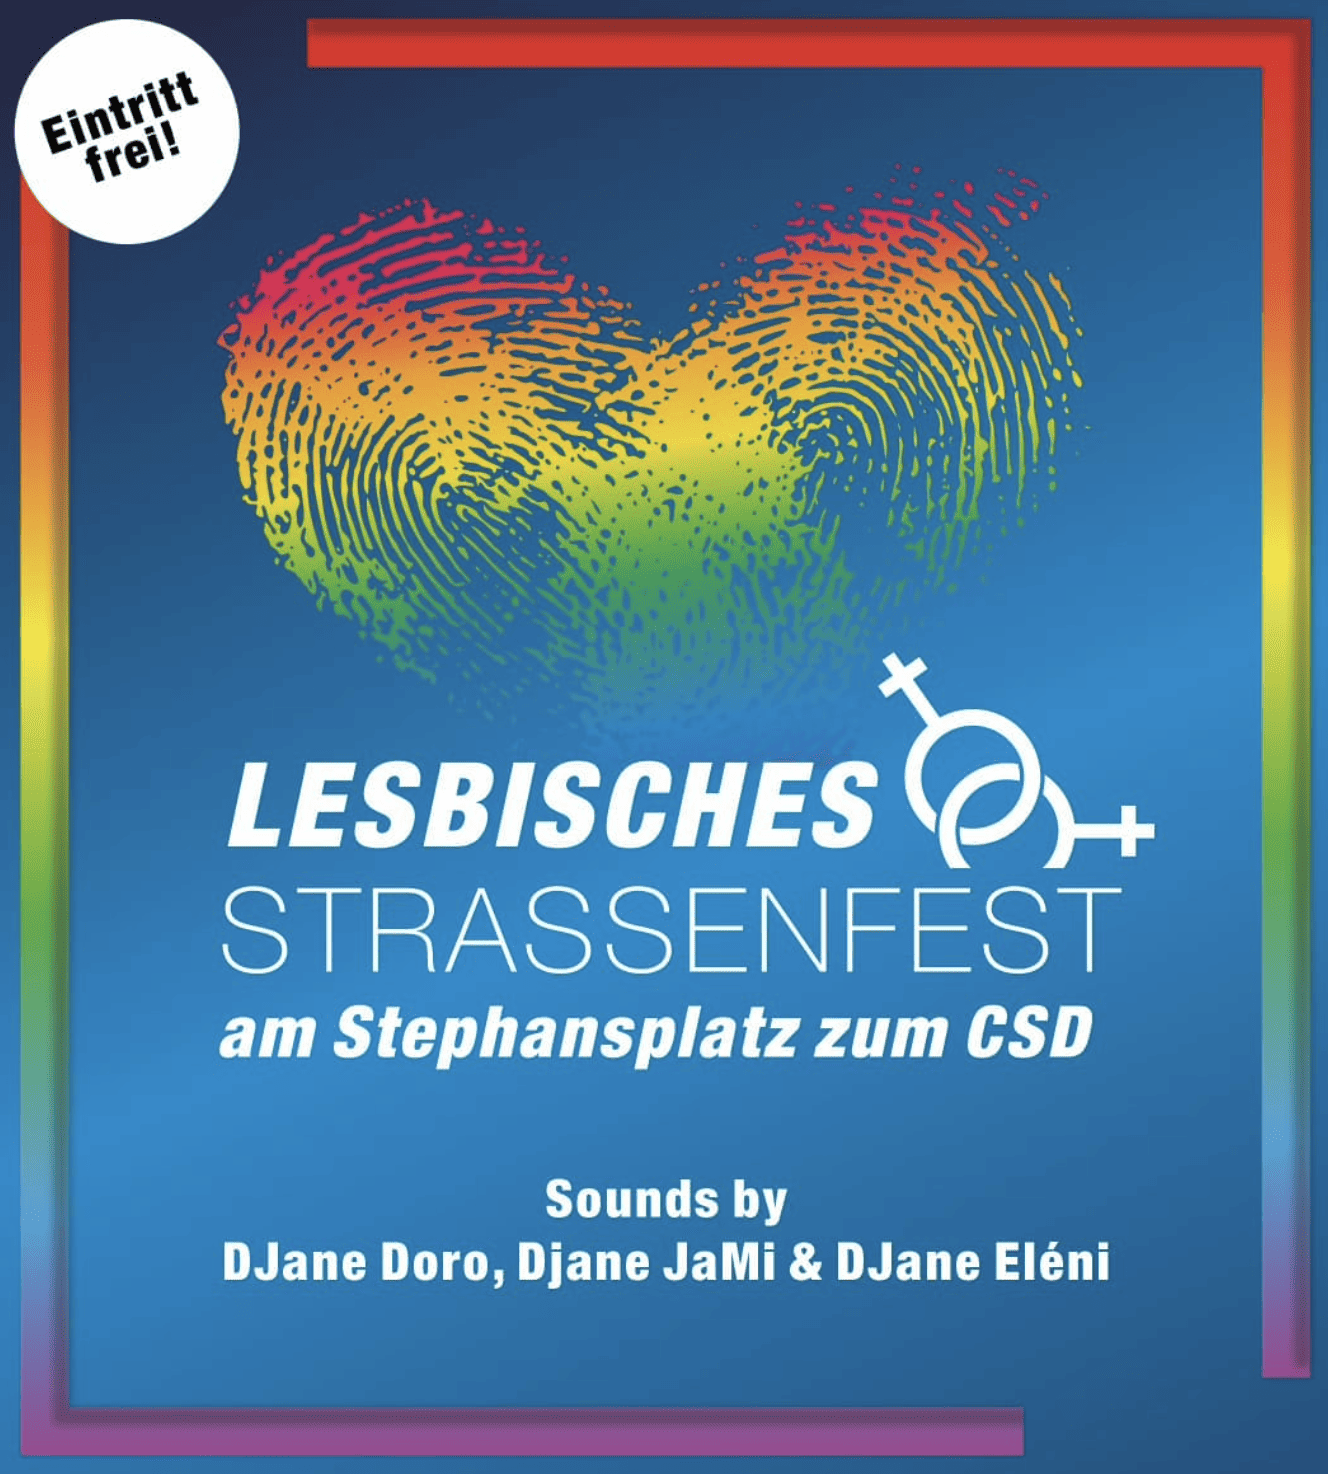 Lesbisches Straßenfest am Stephansplatz Logo